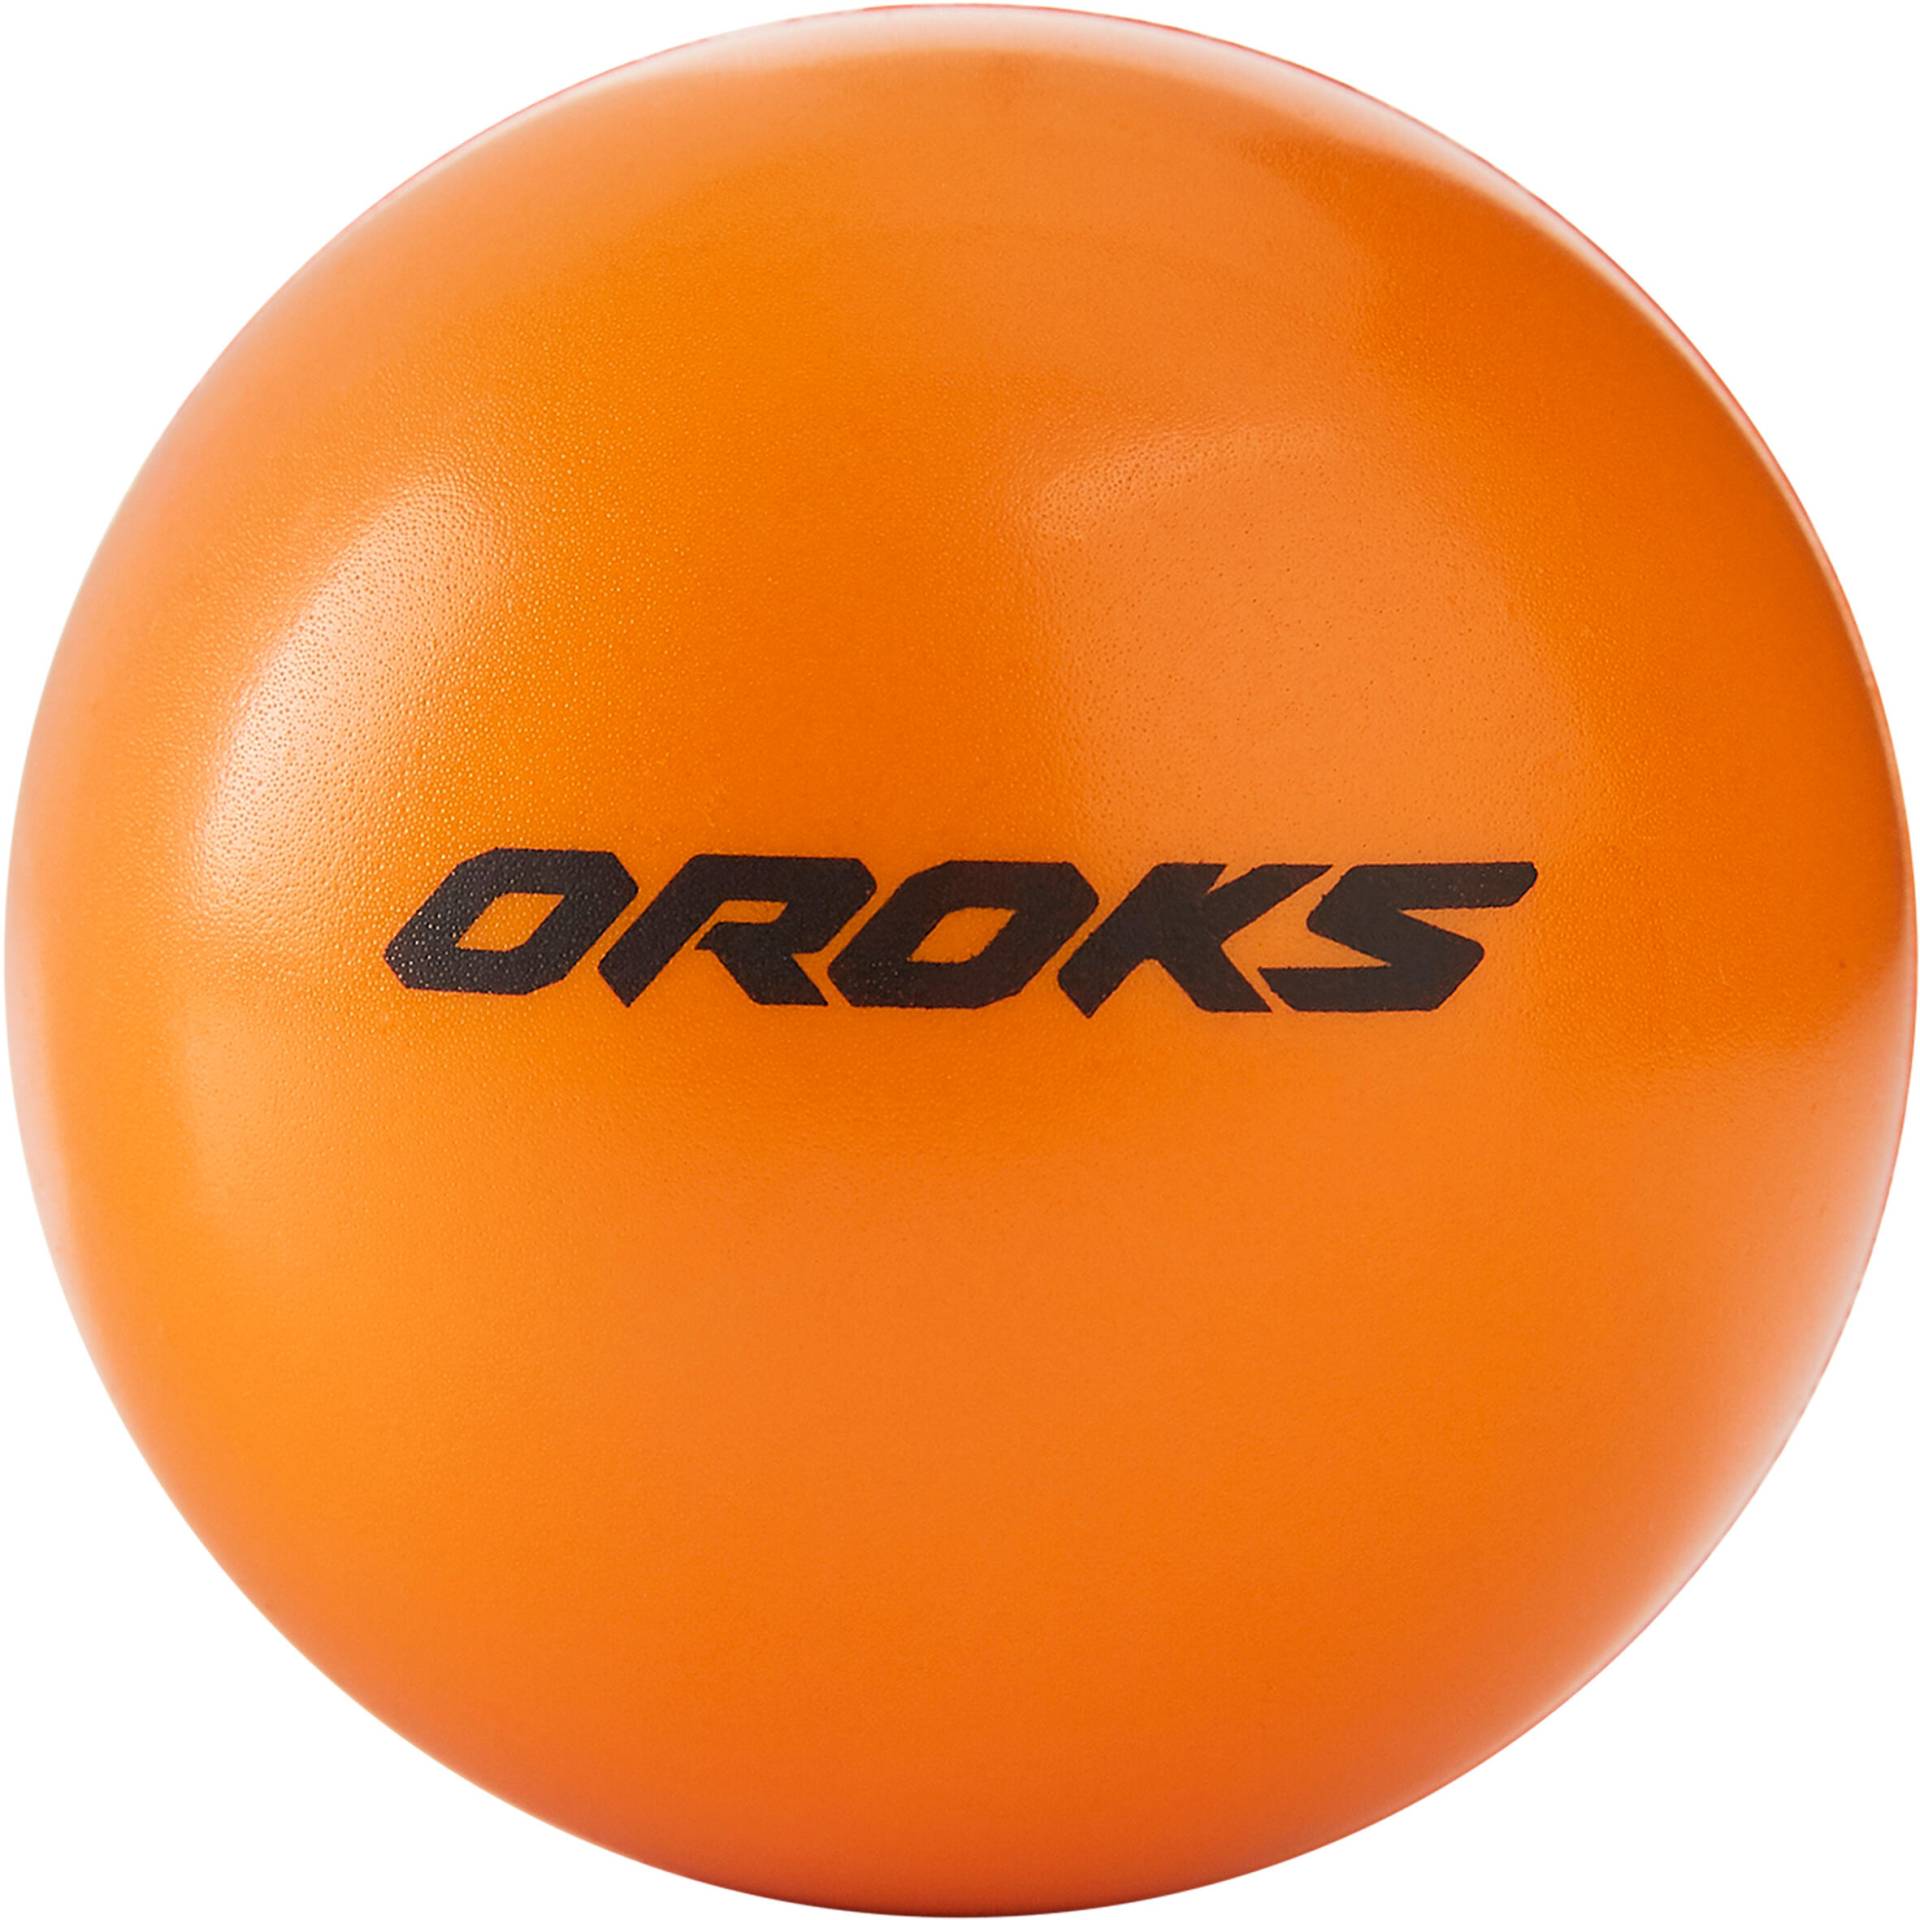 Hockeyball Schaumstoff von OROKS